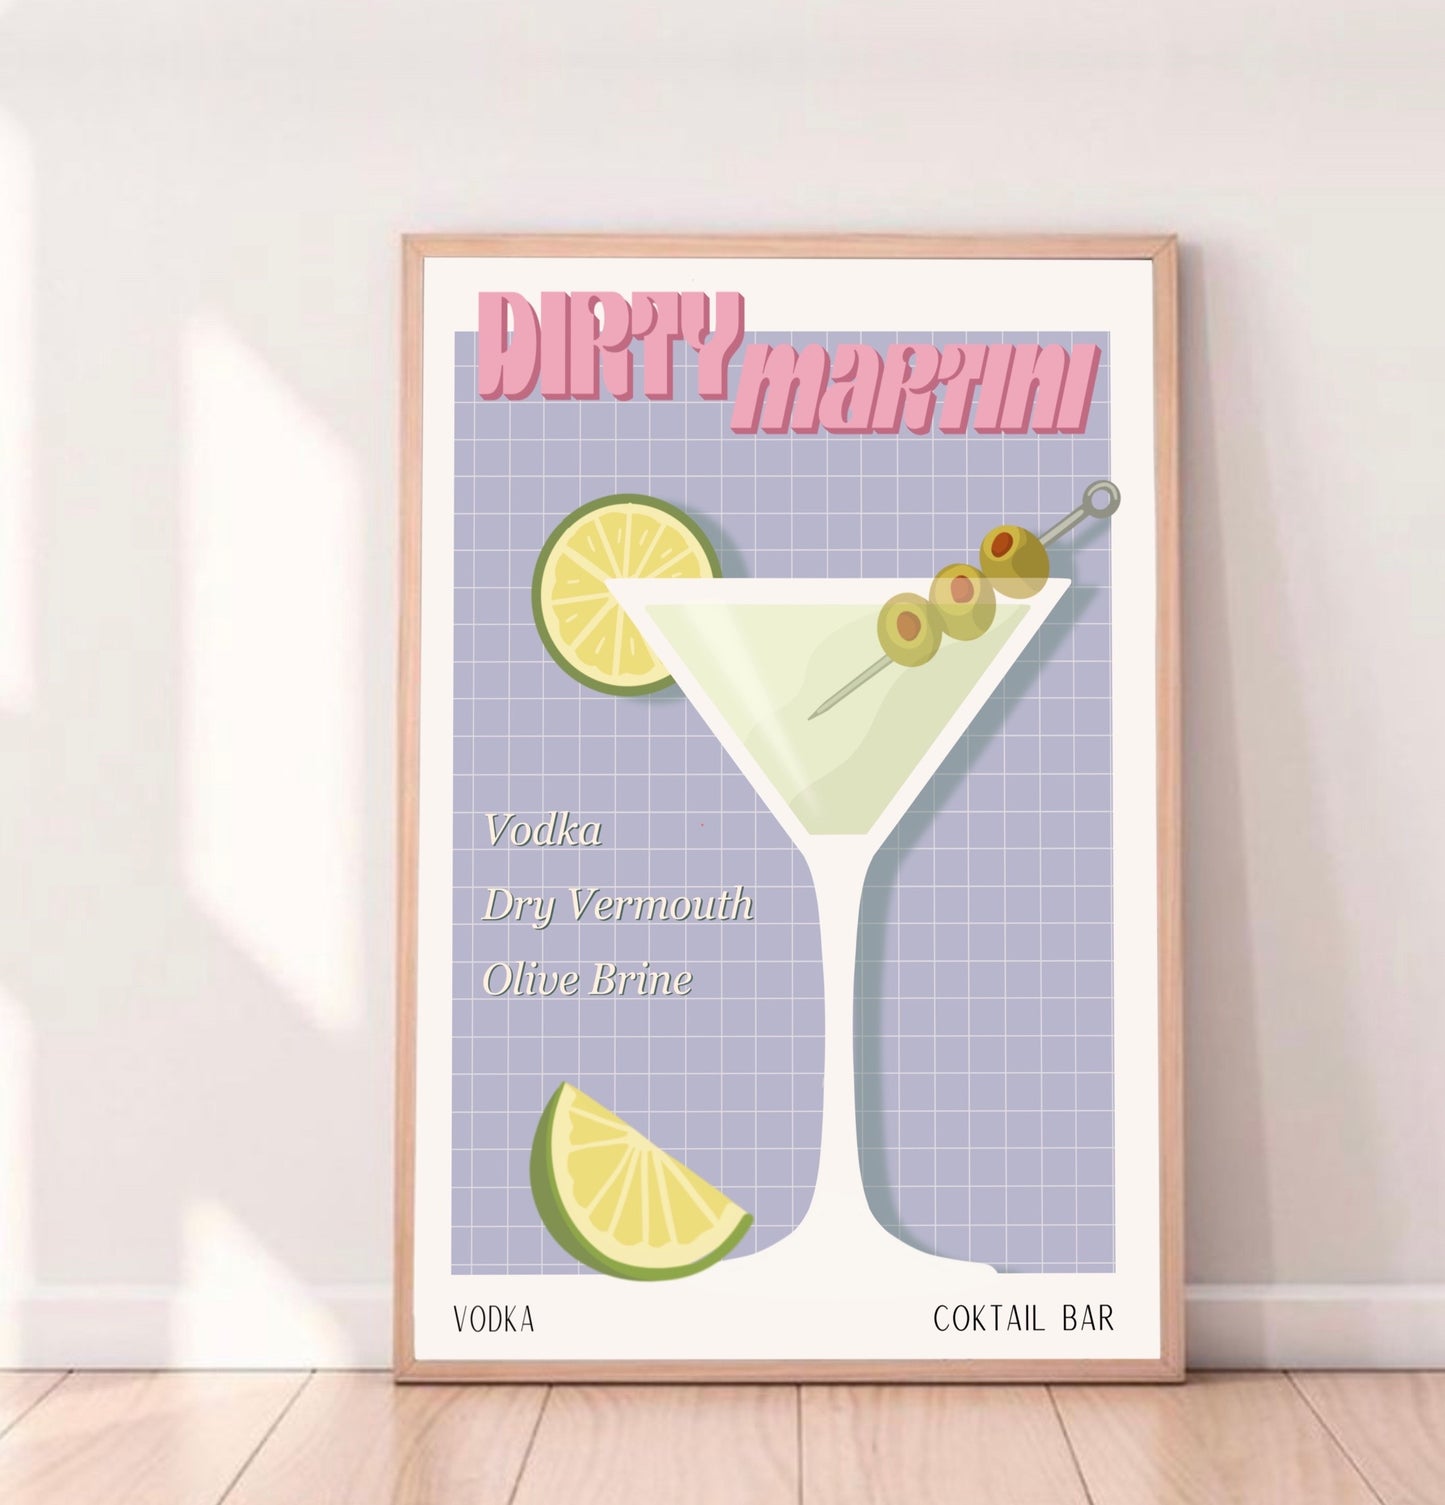 DIRTY MARTINI PRINT - Affiche de bar - Décoration Murale -Affiche de Cocktail - Décoration Intérieur